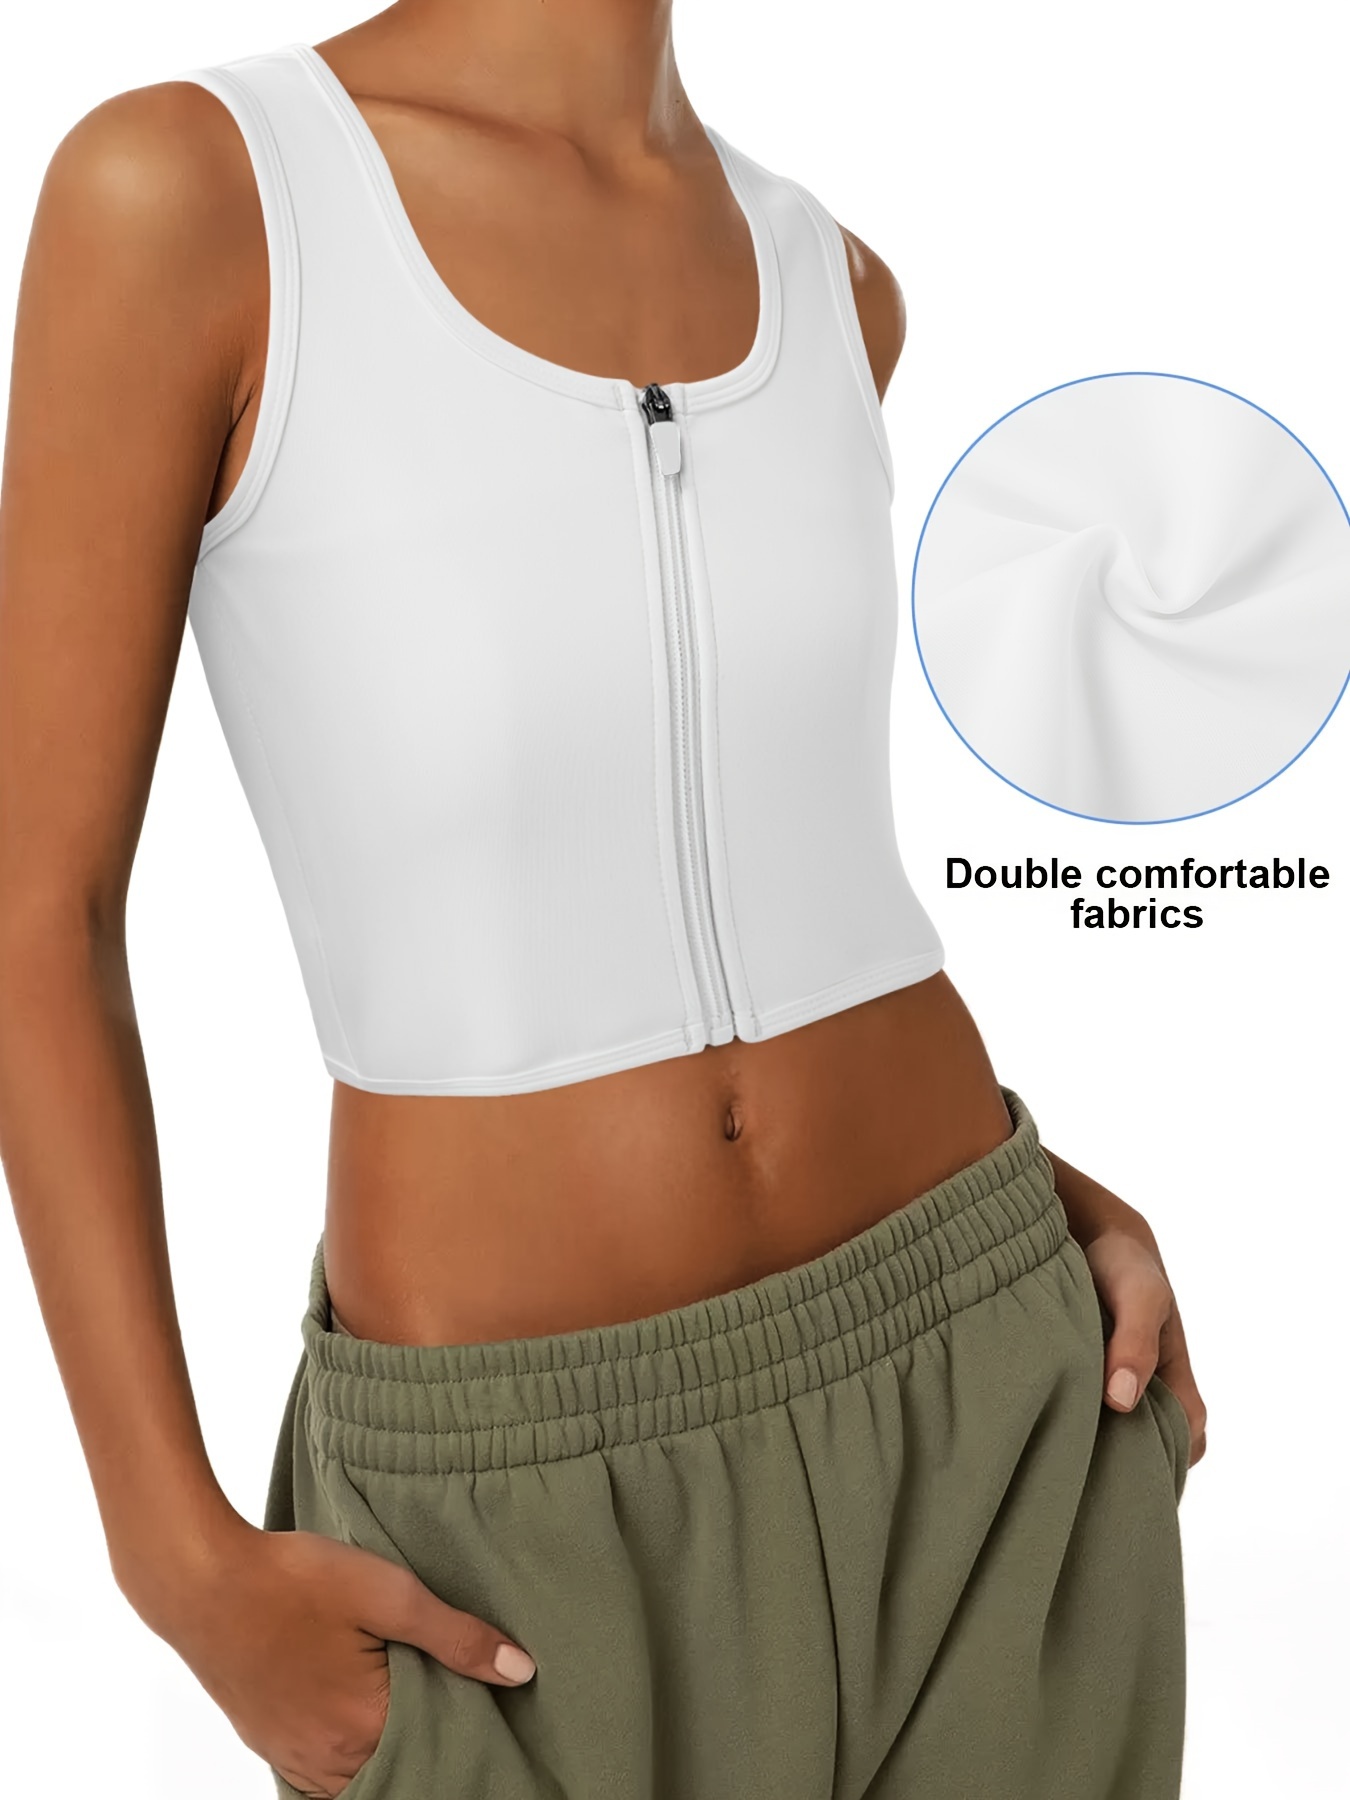 Zipper Shaping Tank Tops, Waist Trainer Tummy Control Slimmer Top, Women's  Underwear & Shapewear